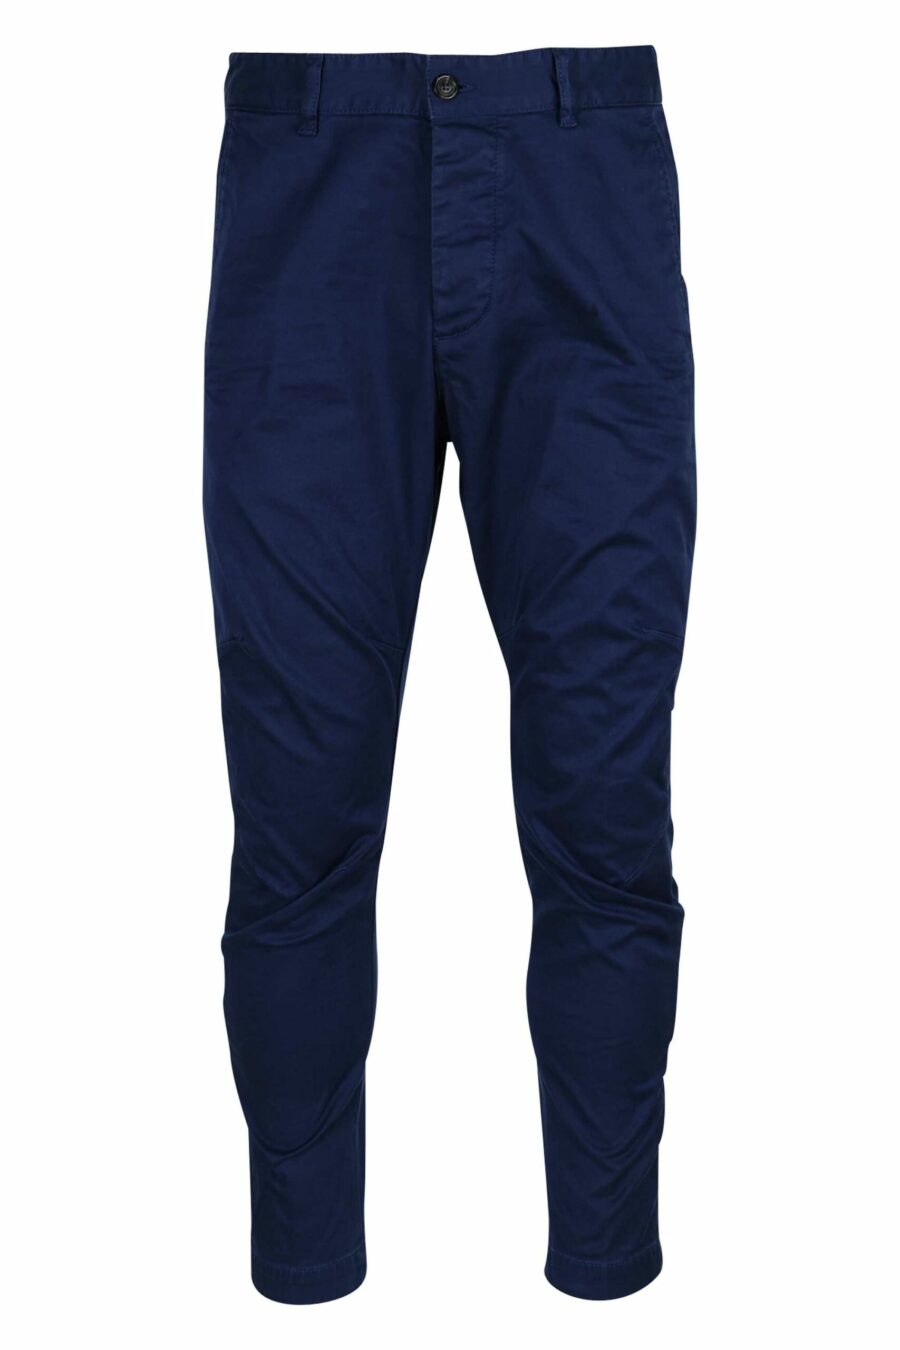 Pantalón azul oscuro "sexy chino" - 8054148321727 scaled